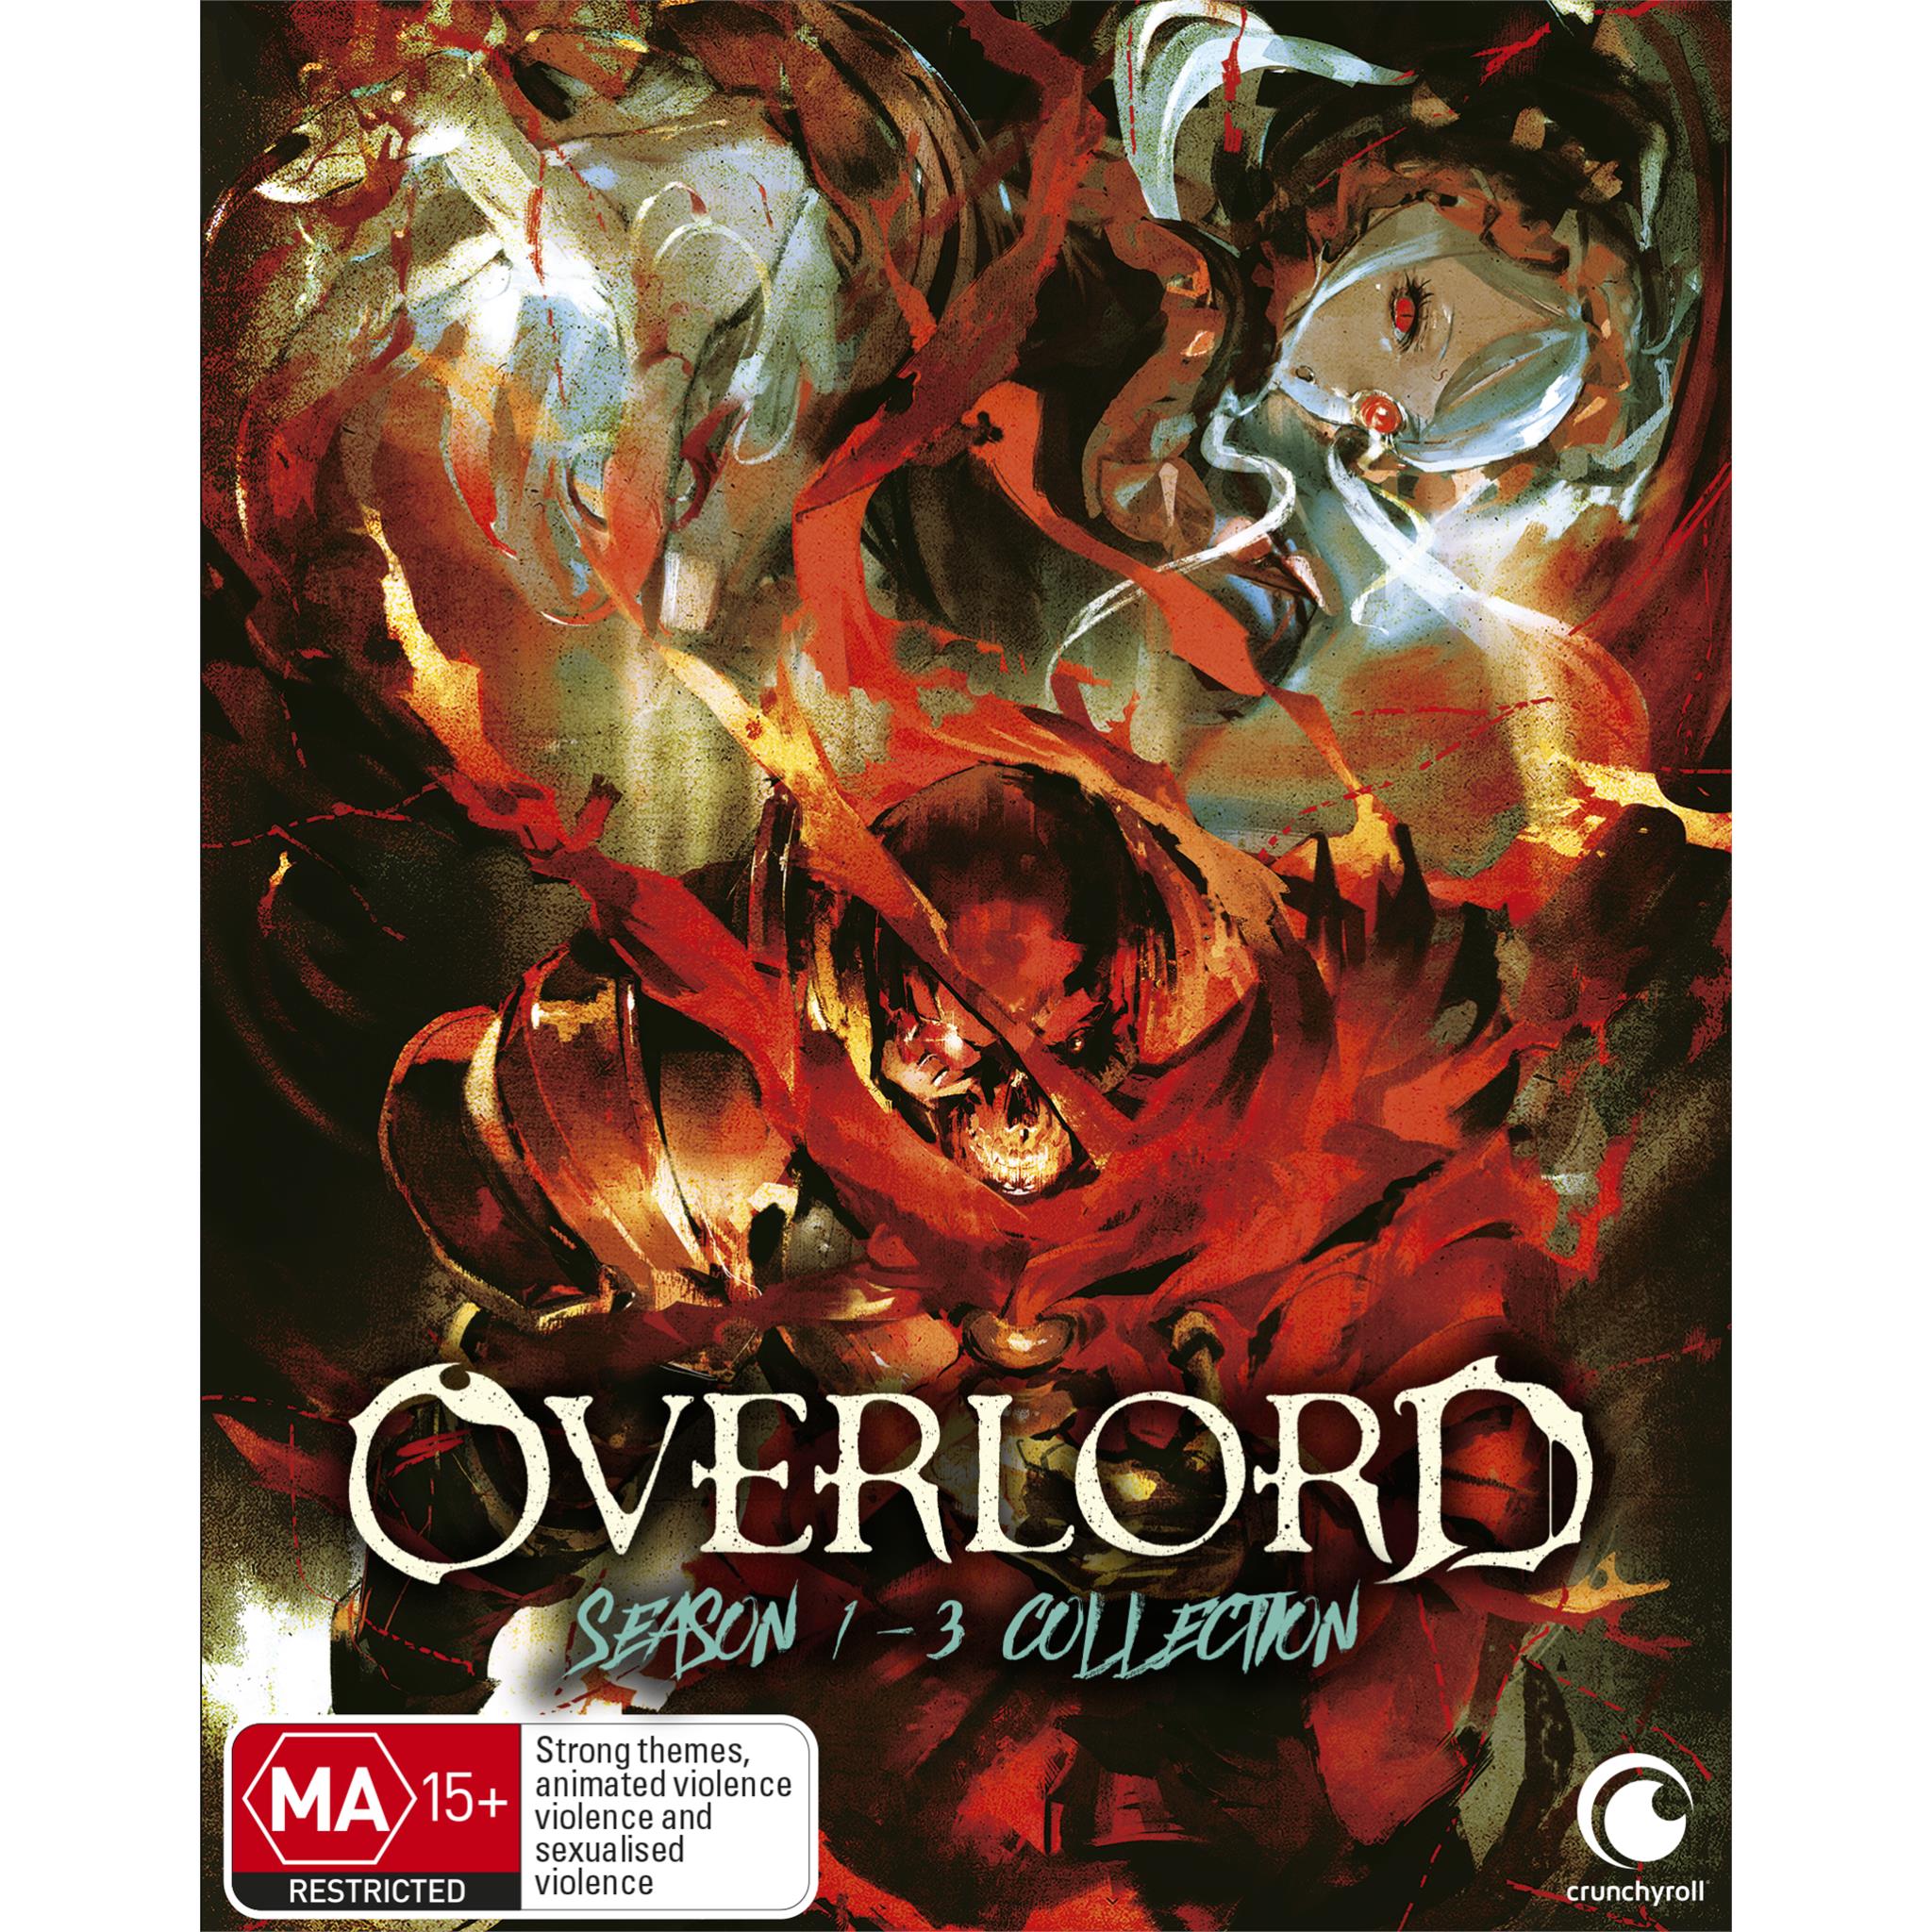 Overlord  Season 13 Collection  JB HiFi